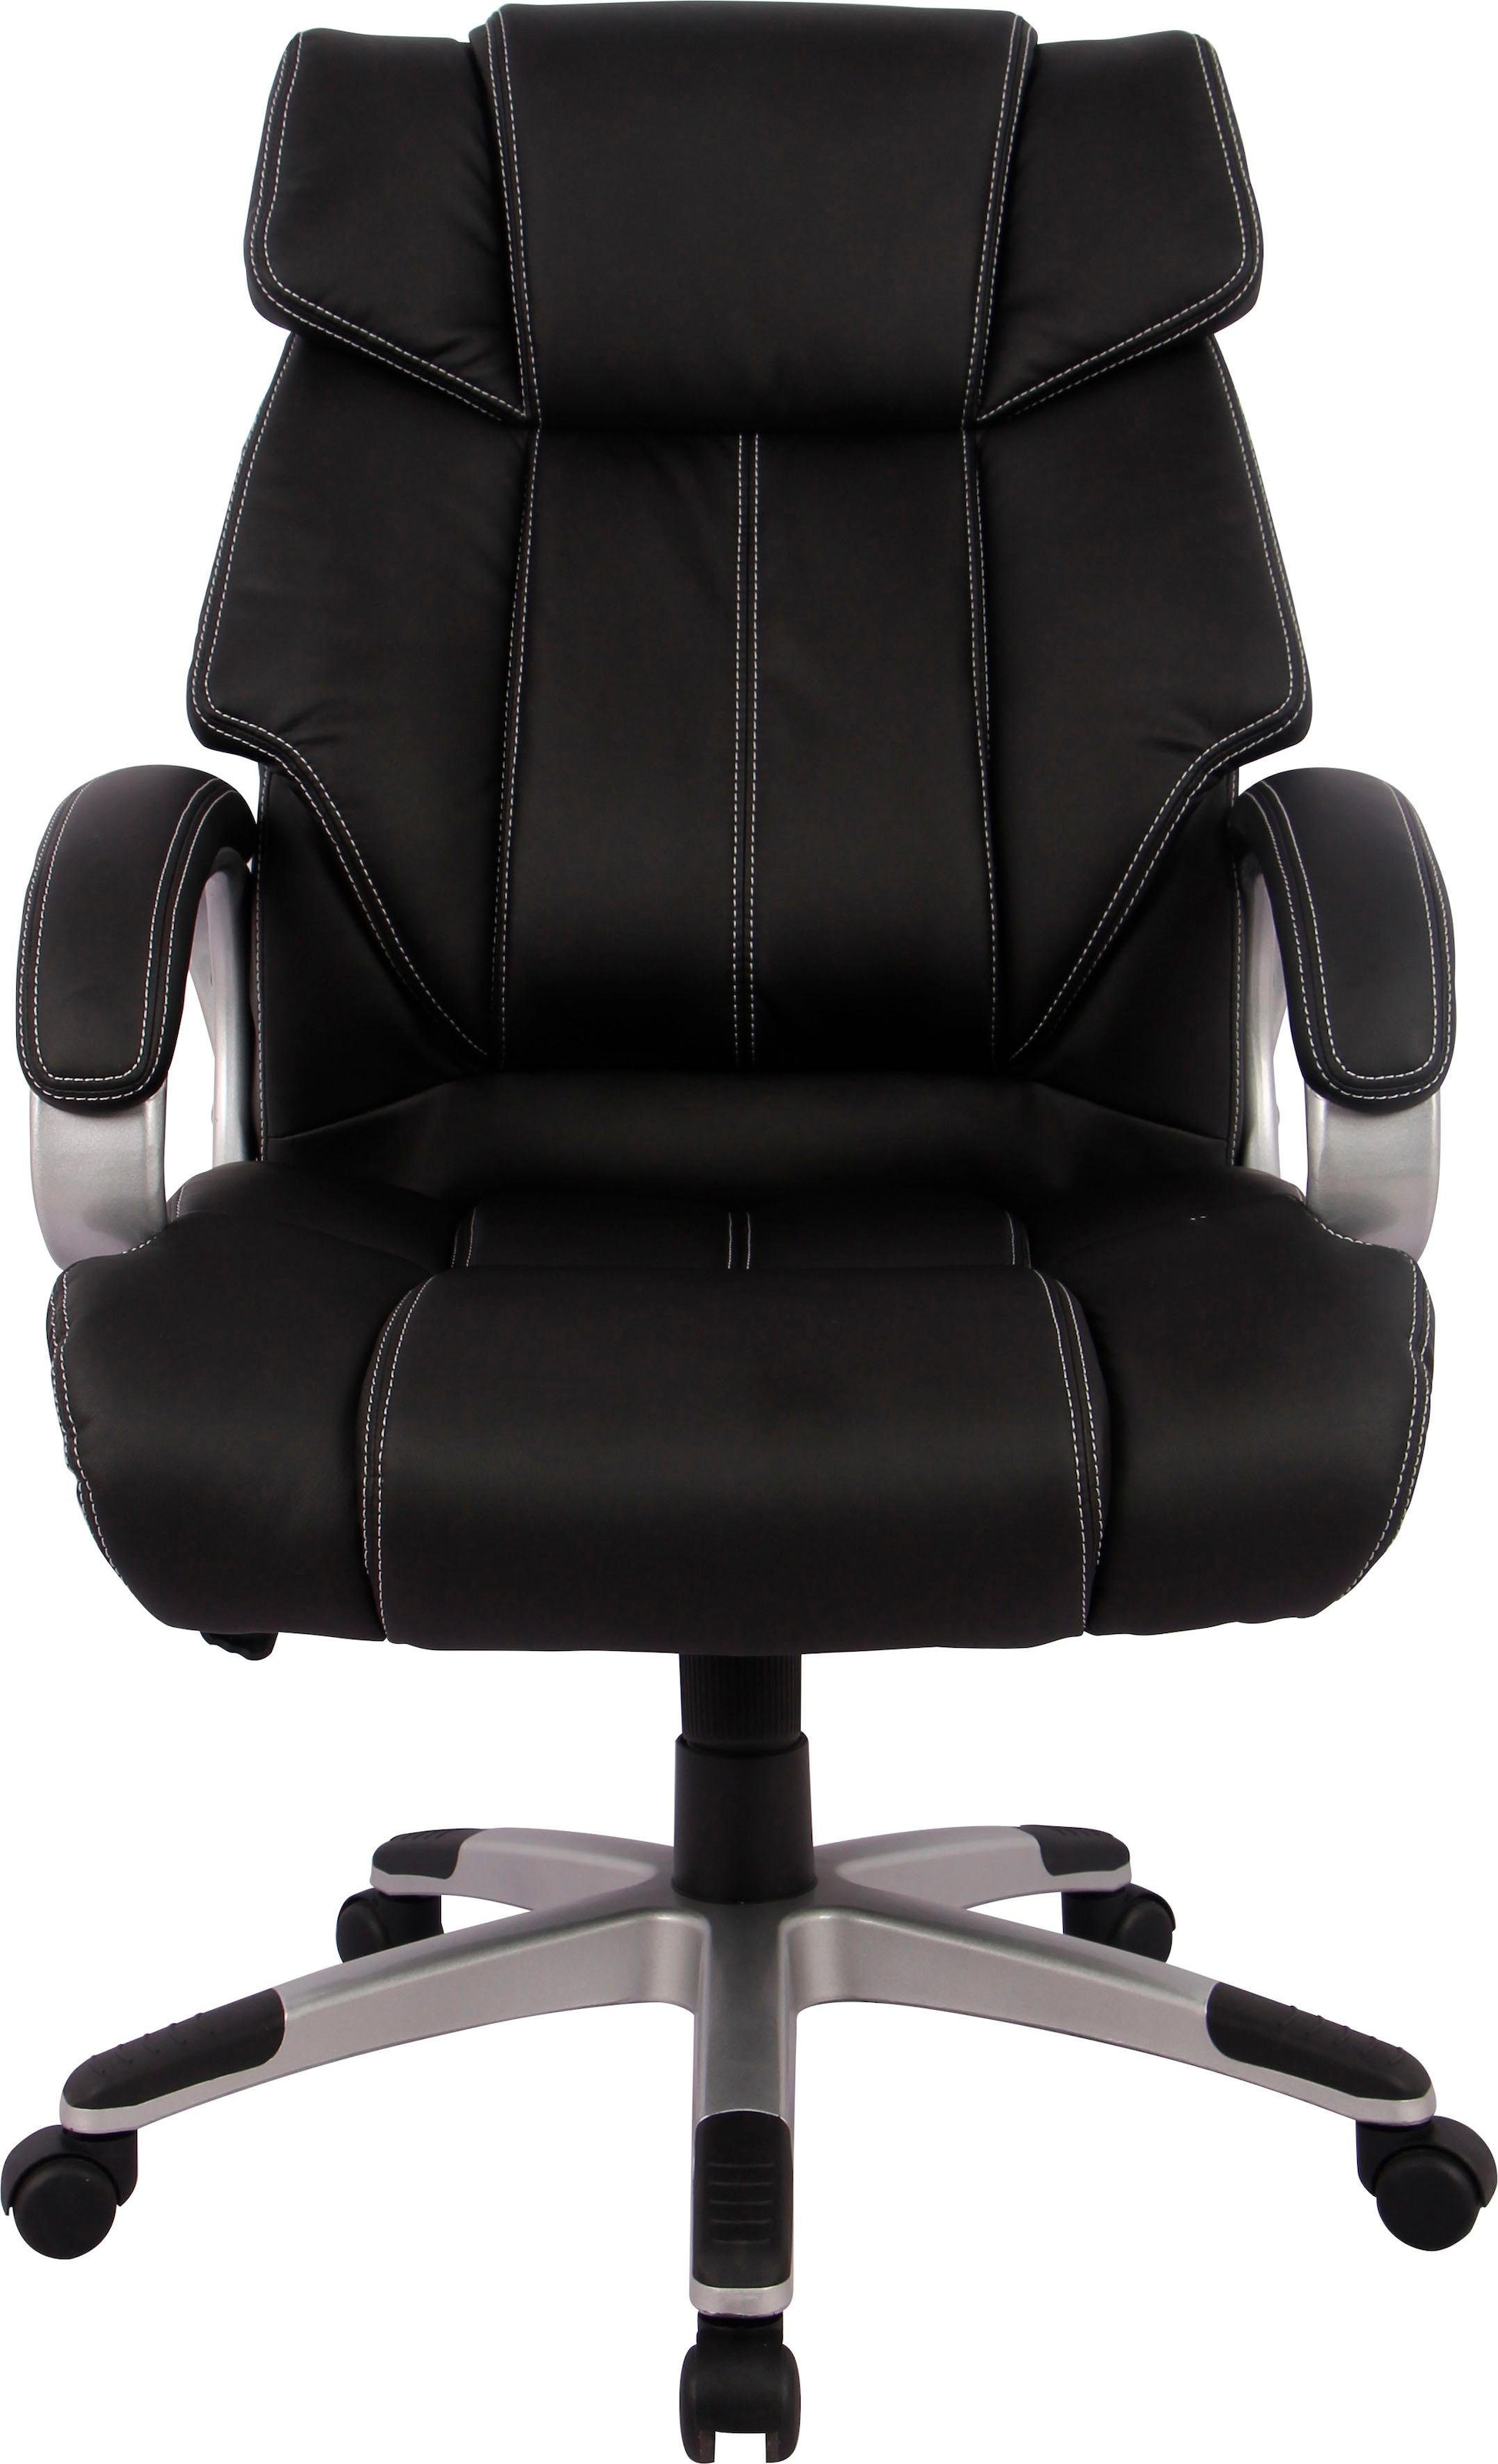 INOSIGN Chefsessel »bequemer Bürostuhl fürs Homeoffice,«, Kunstleder, verstellbare Sitzhöhe/Sitztiefe, komfortable Polsterung